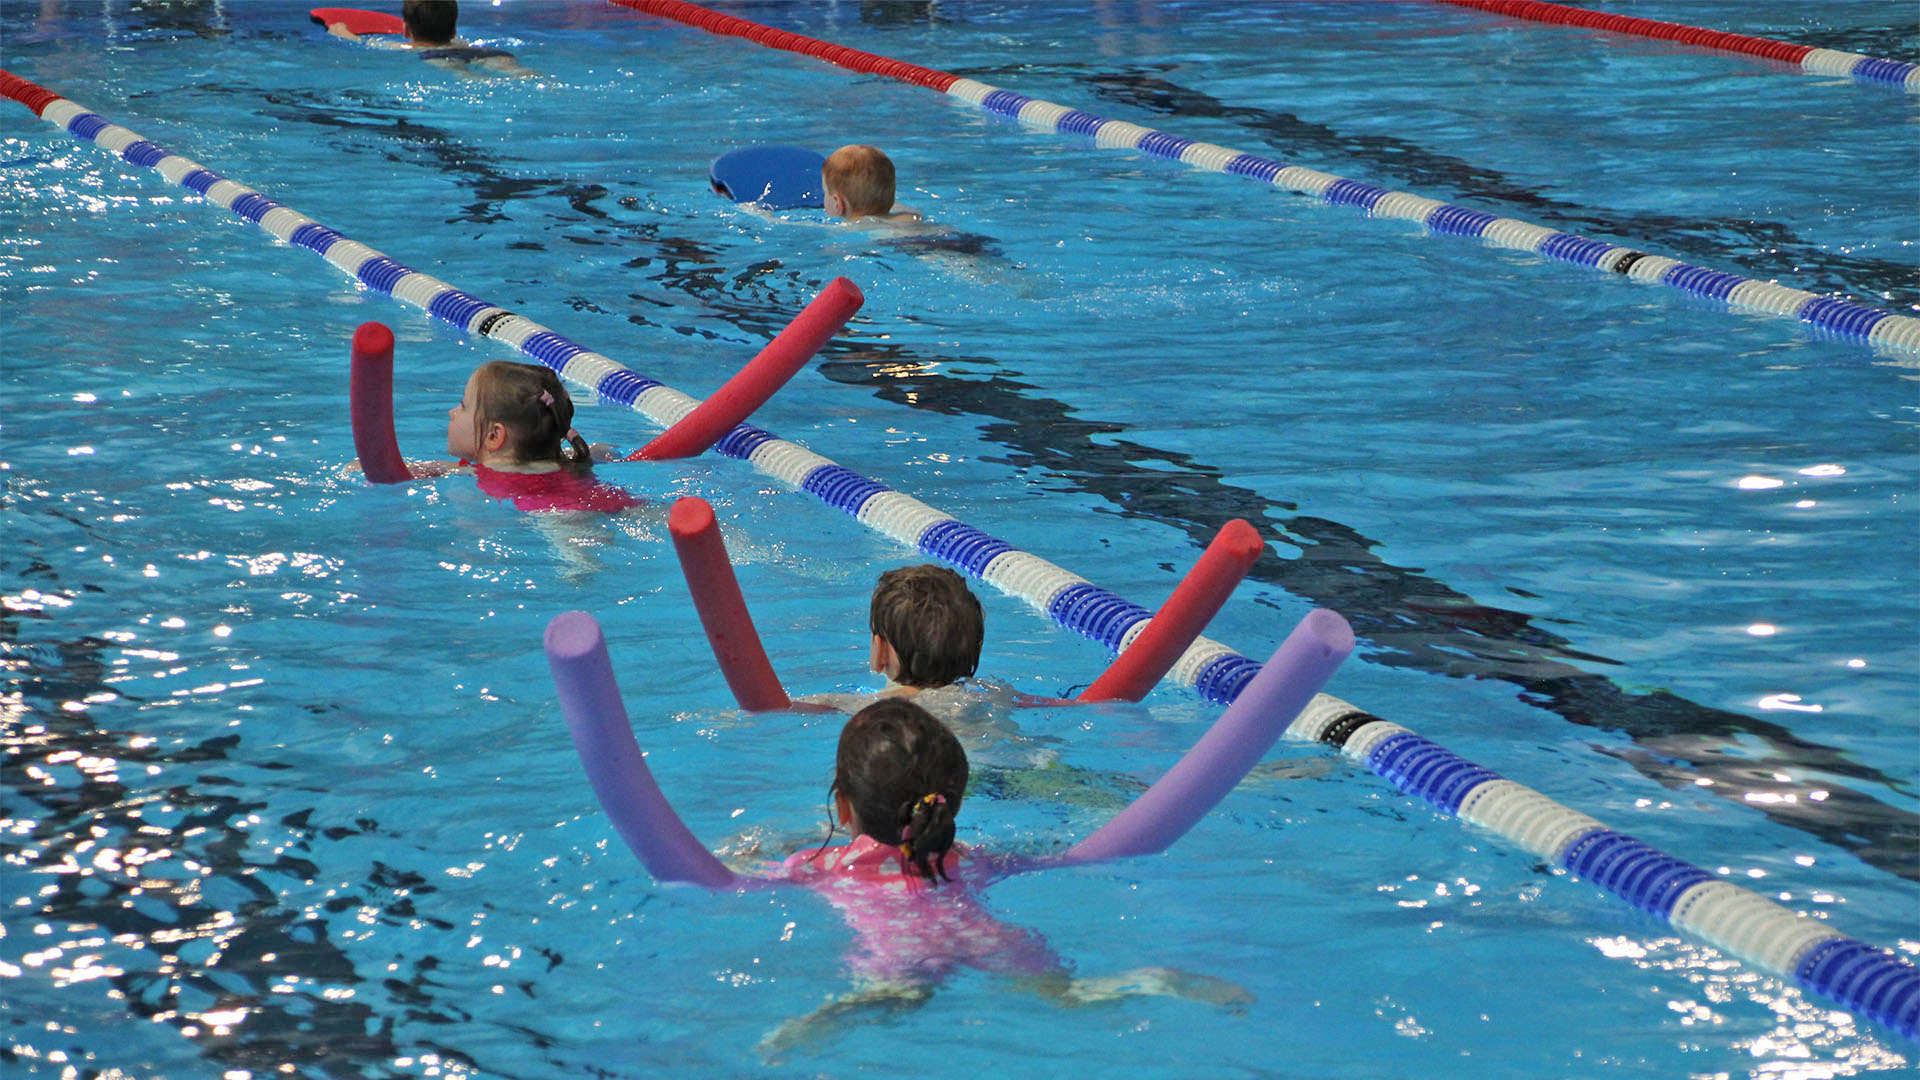 Kinder schwimmen in einem Schwimmbecken hintereinander. Jedes Kind hat eine farbige Schwimmnudel unter dem Körper.